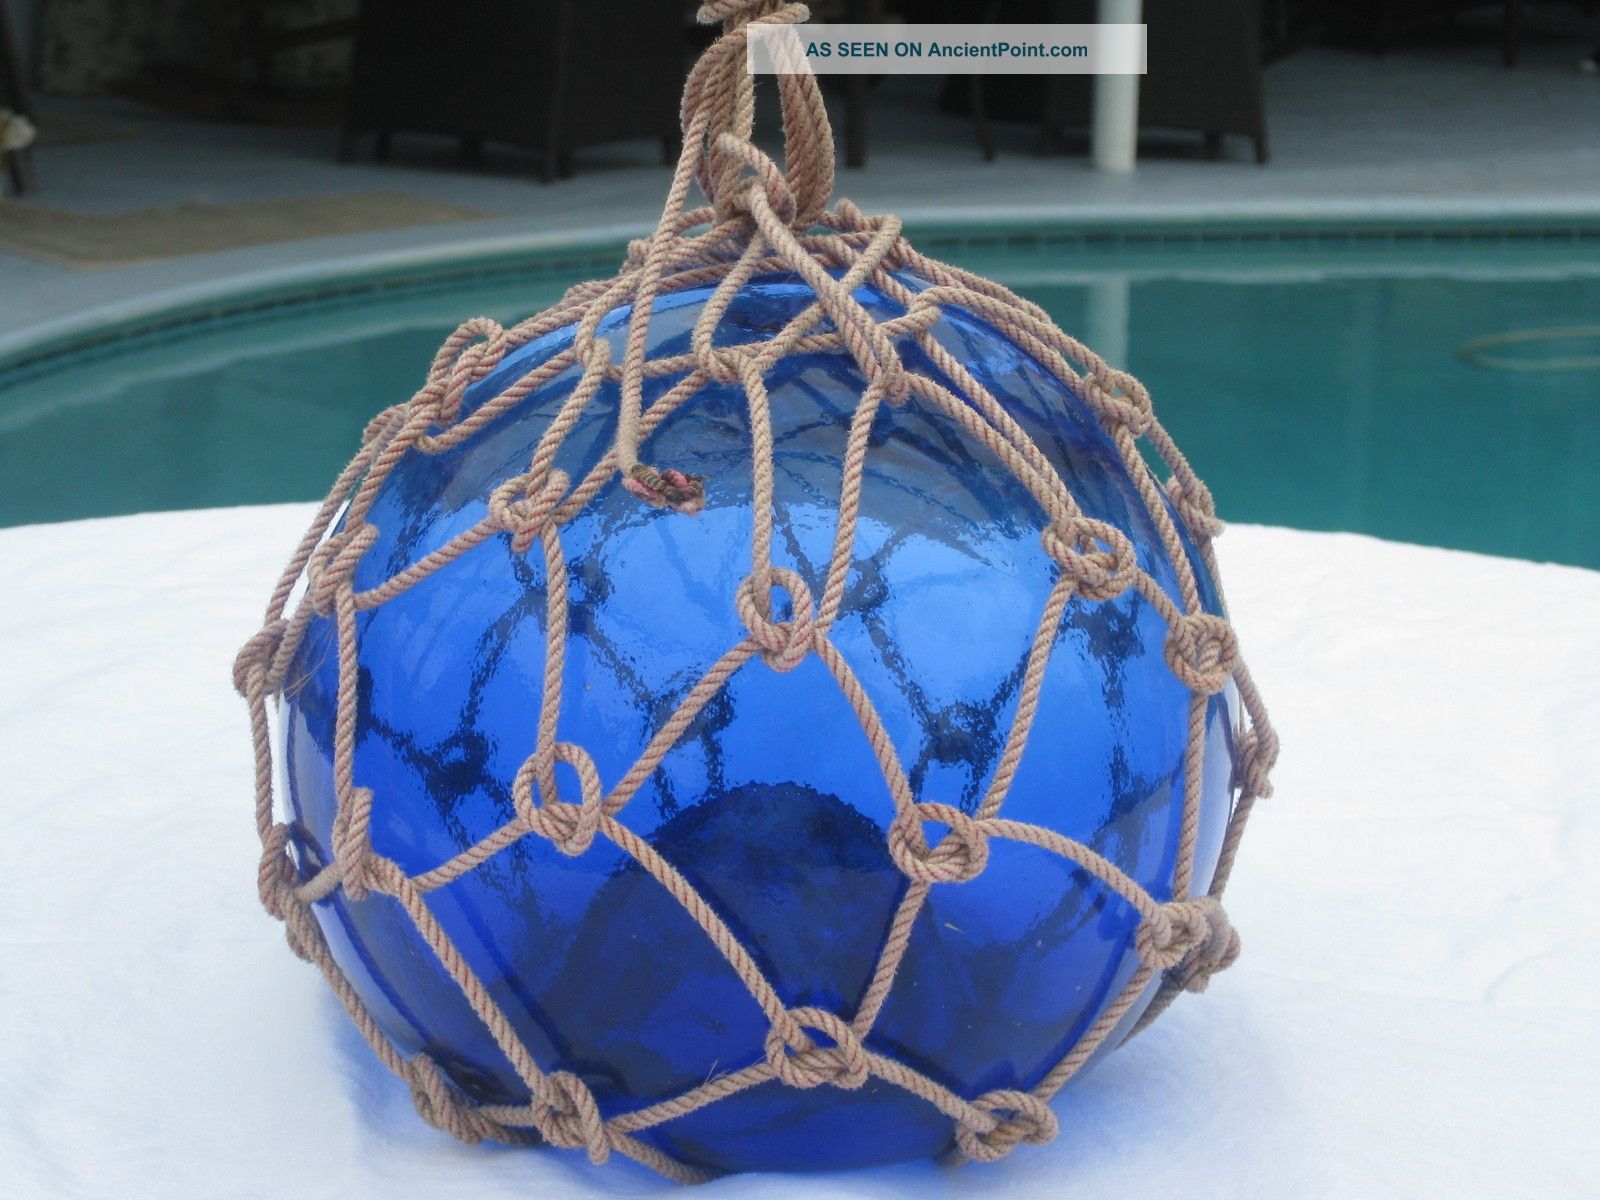 Antique Japanese Glass Fish Net Floats - Dark Deep Blue - Medium Fishing Nets & Floats photo